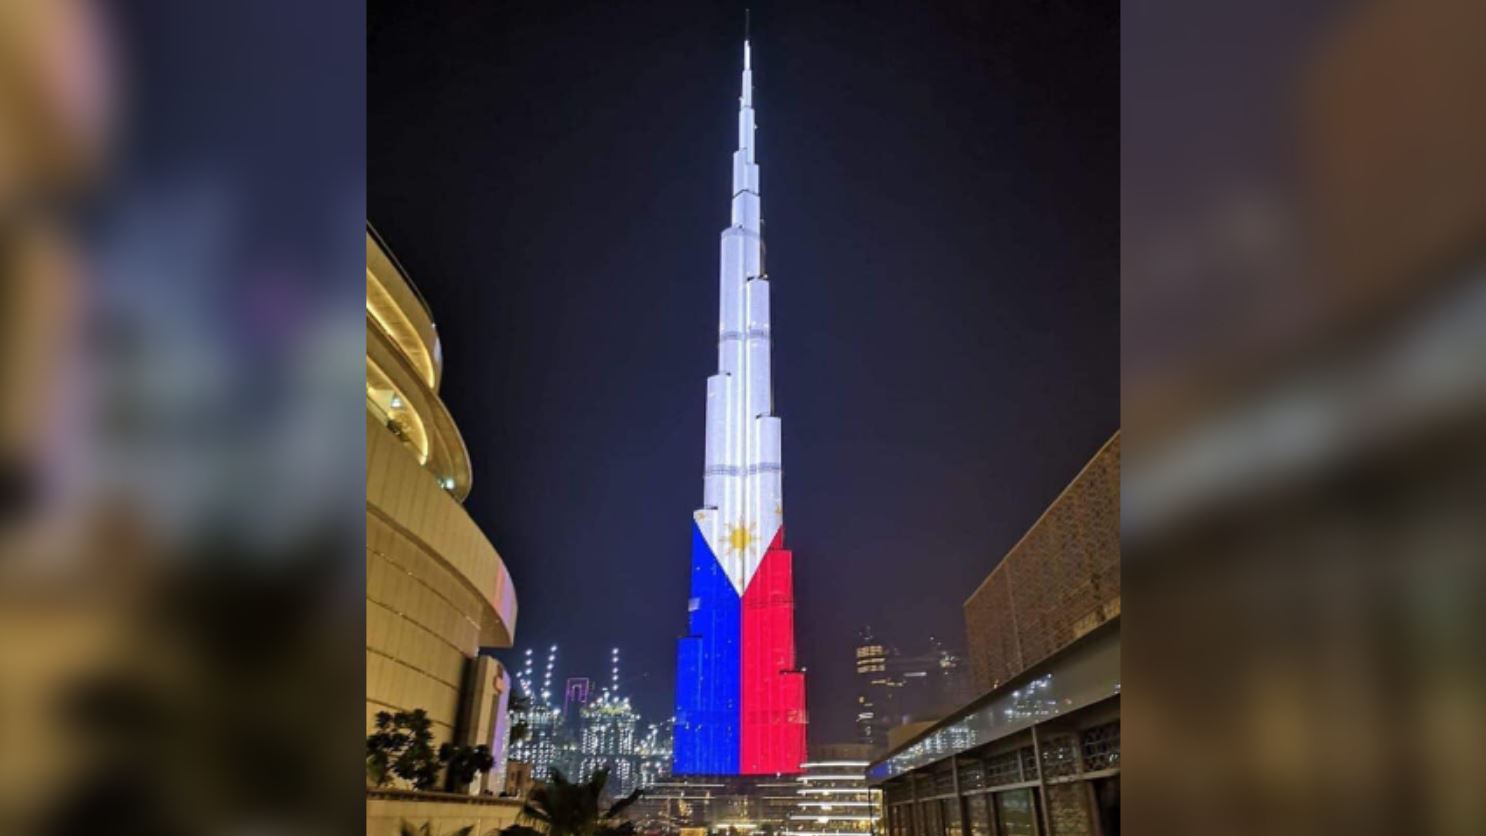 Burj Khalifa Philippine flag Independence Day